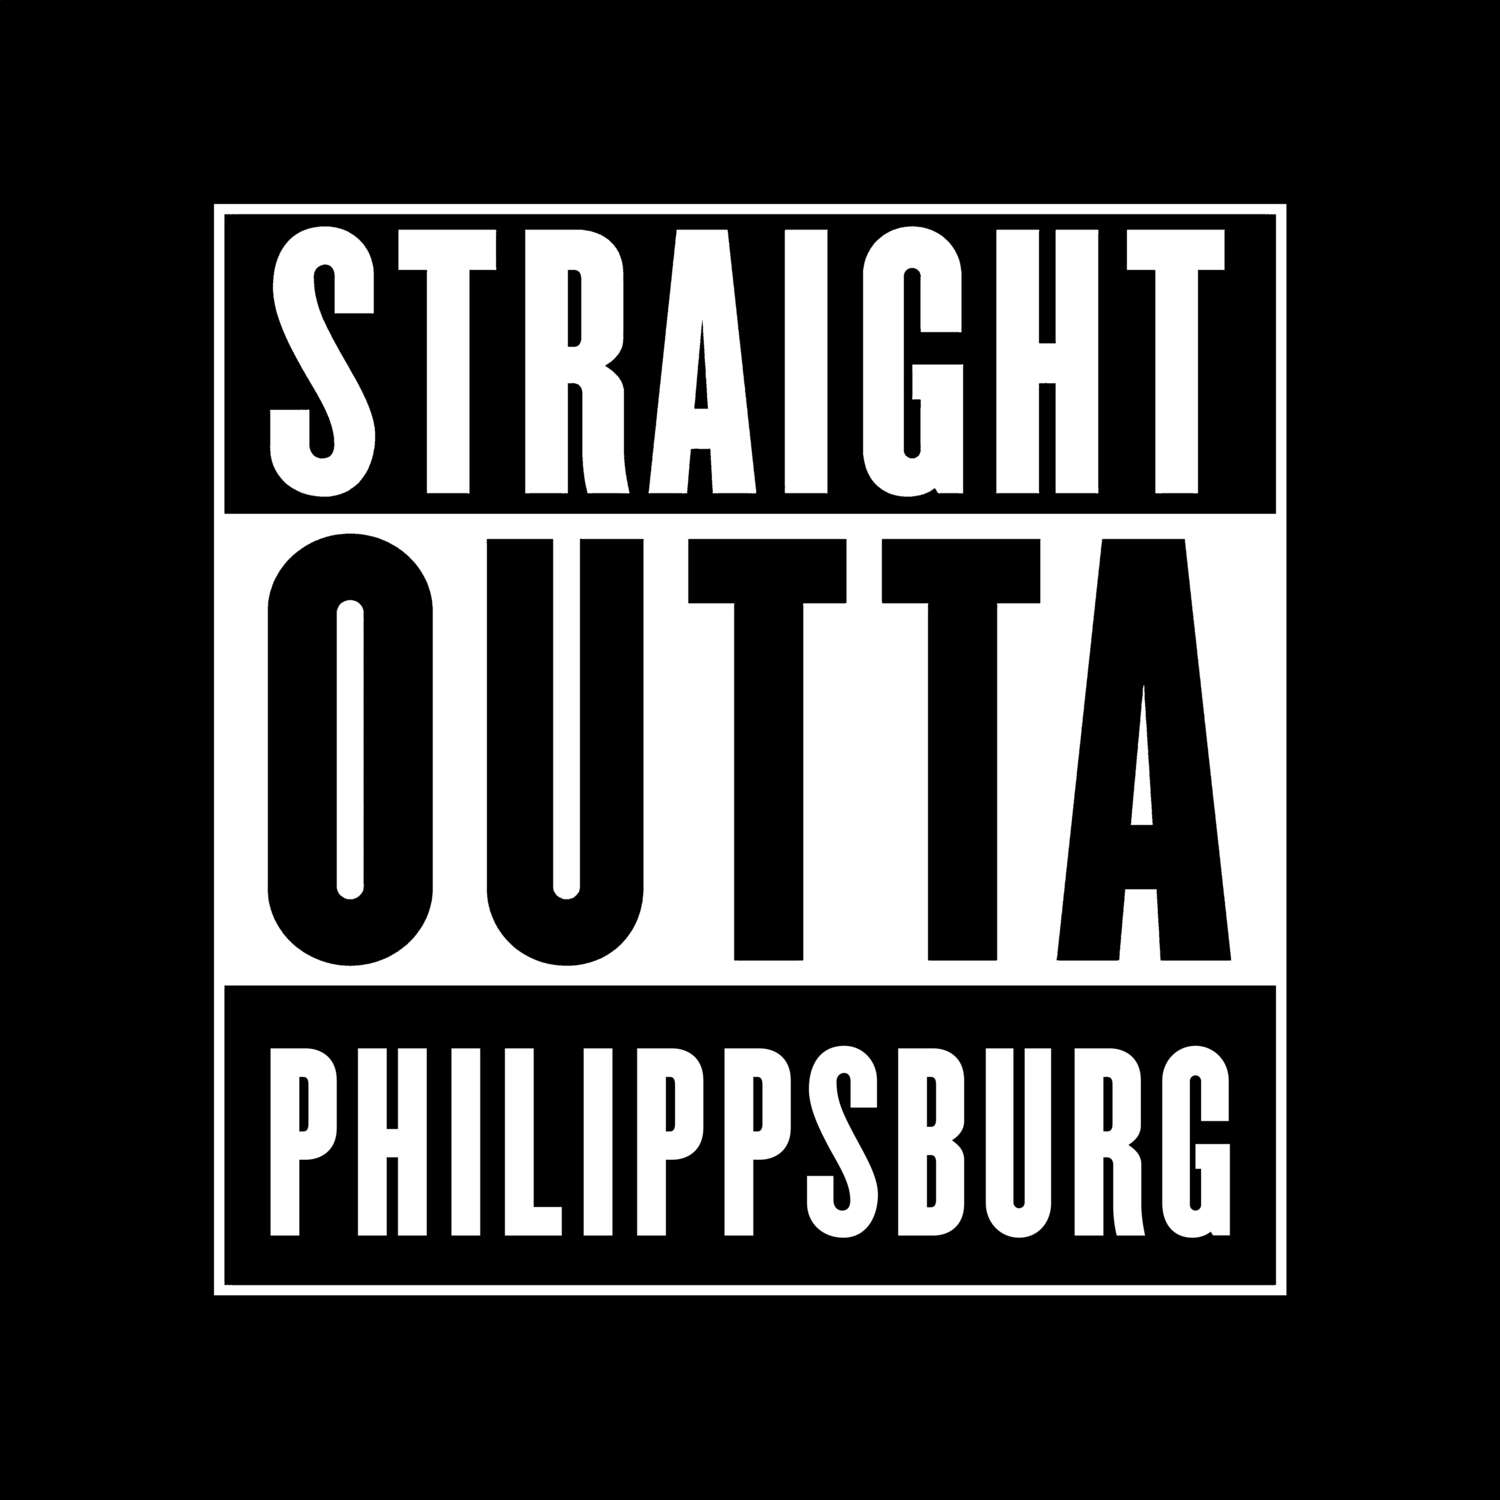 Philippsburg T-Shirt »Straight Outta«